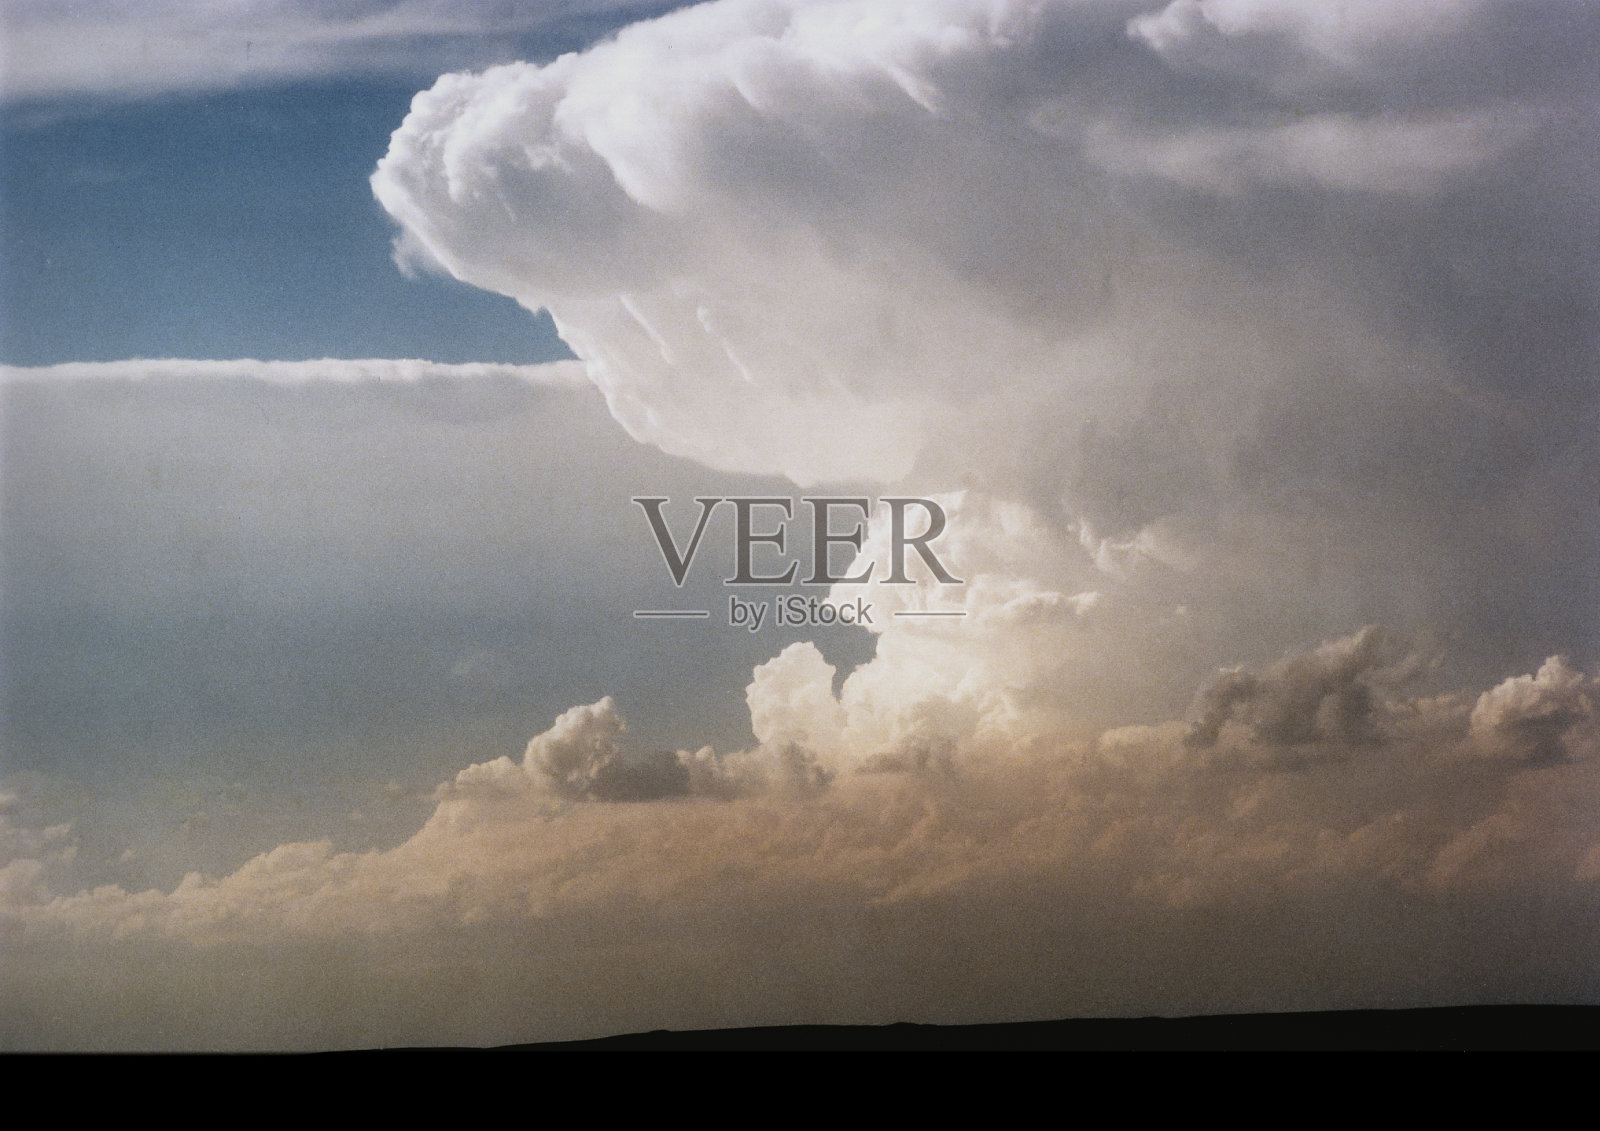 大平原上壮观的超级单体雷暴照片摄影图片